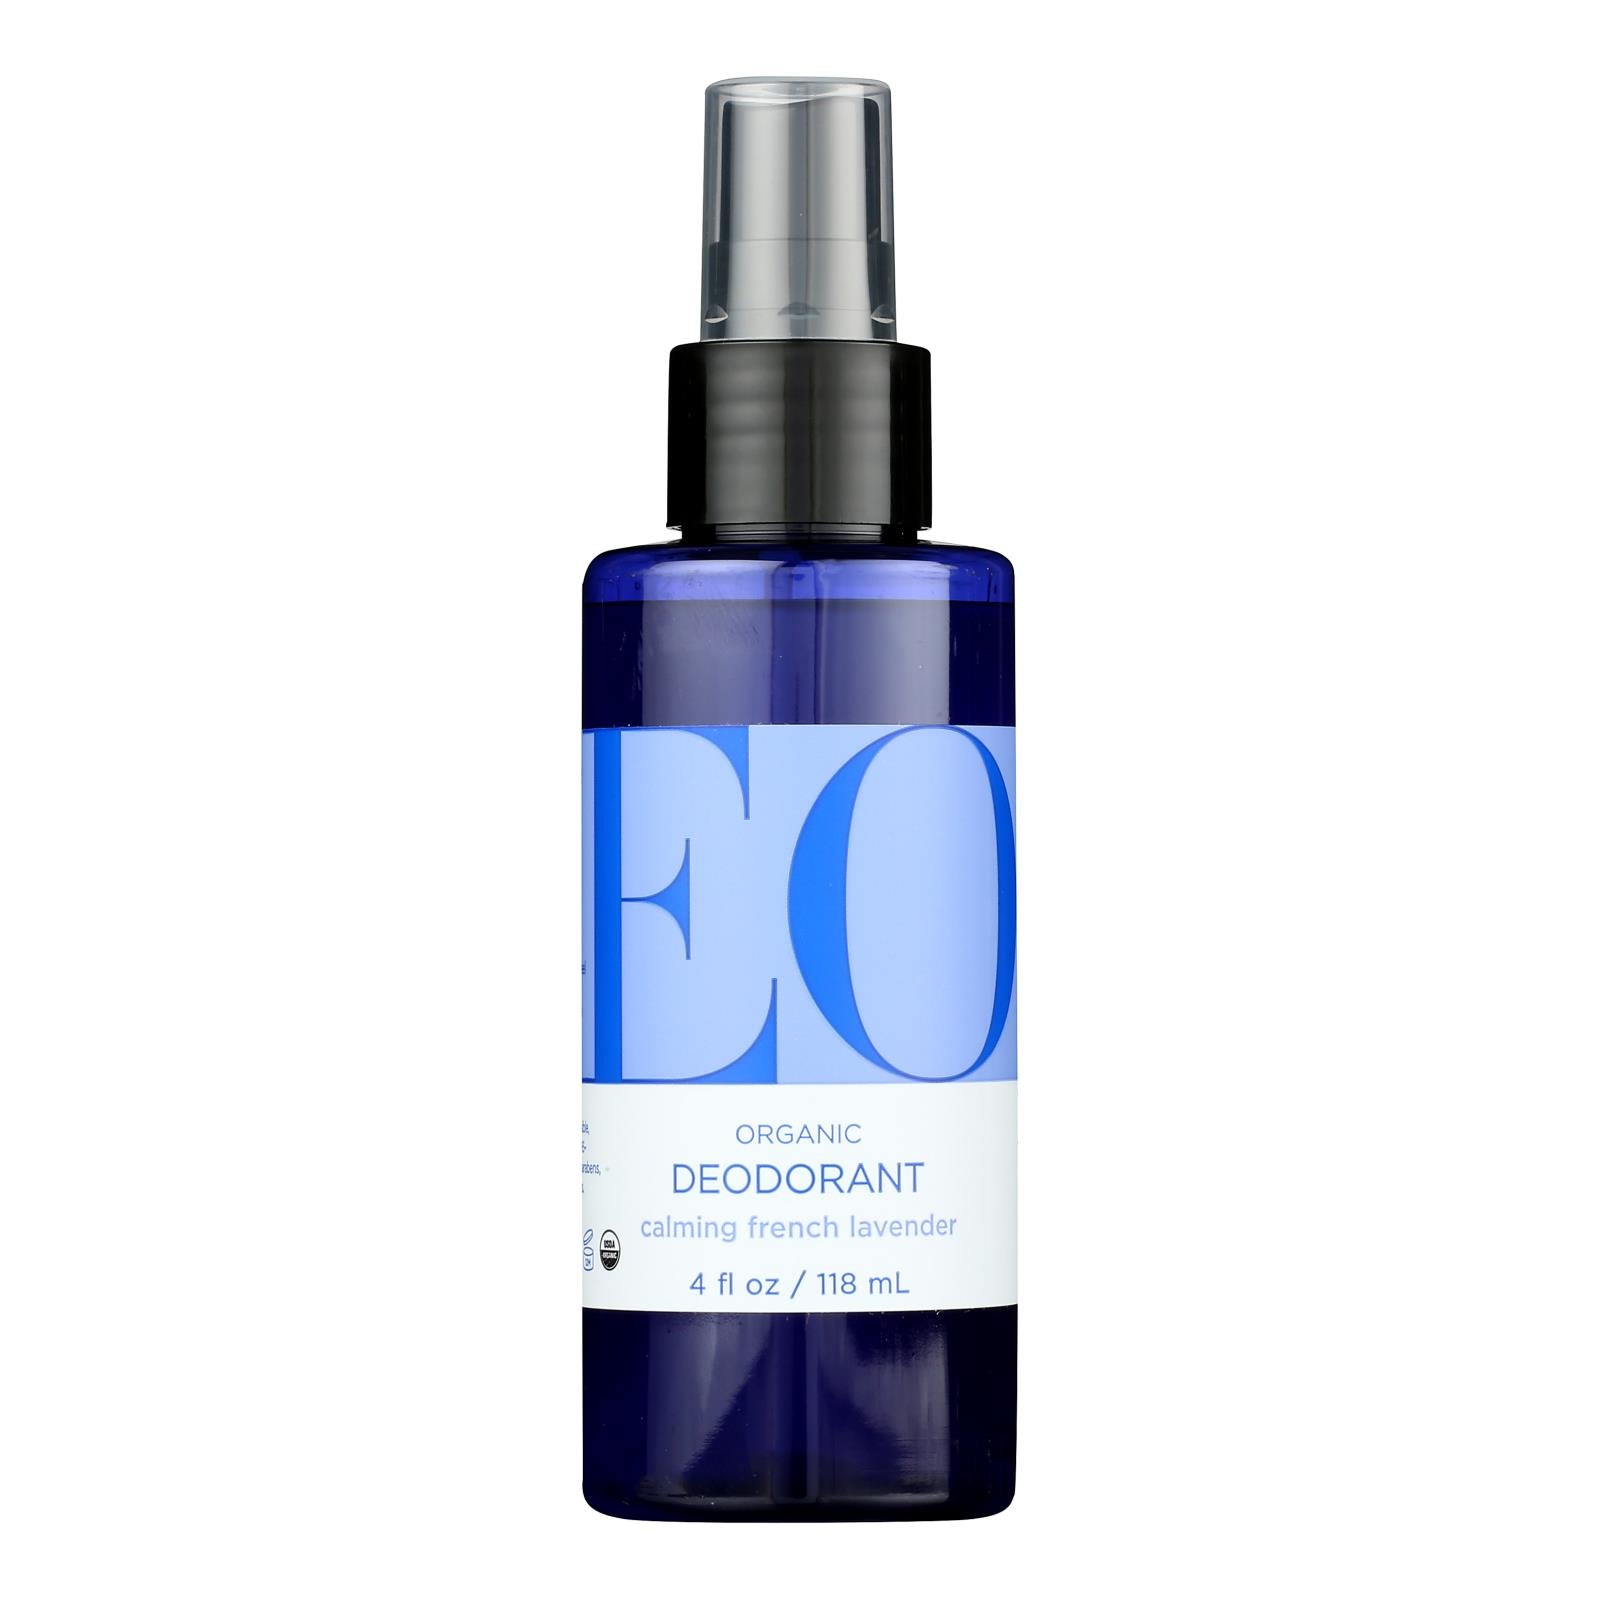 Eo Products - Organic Deodorant Spray Lavender - 4 Fl Oz